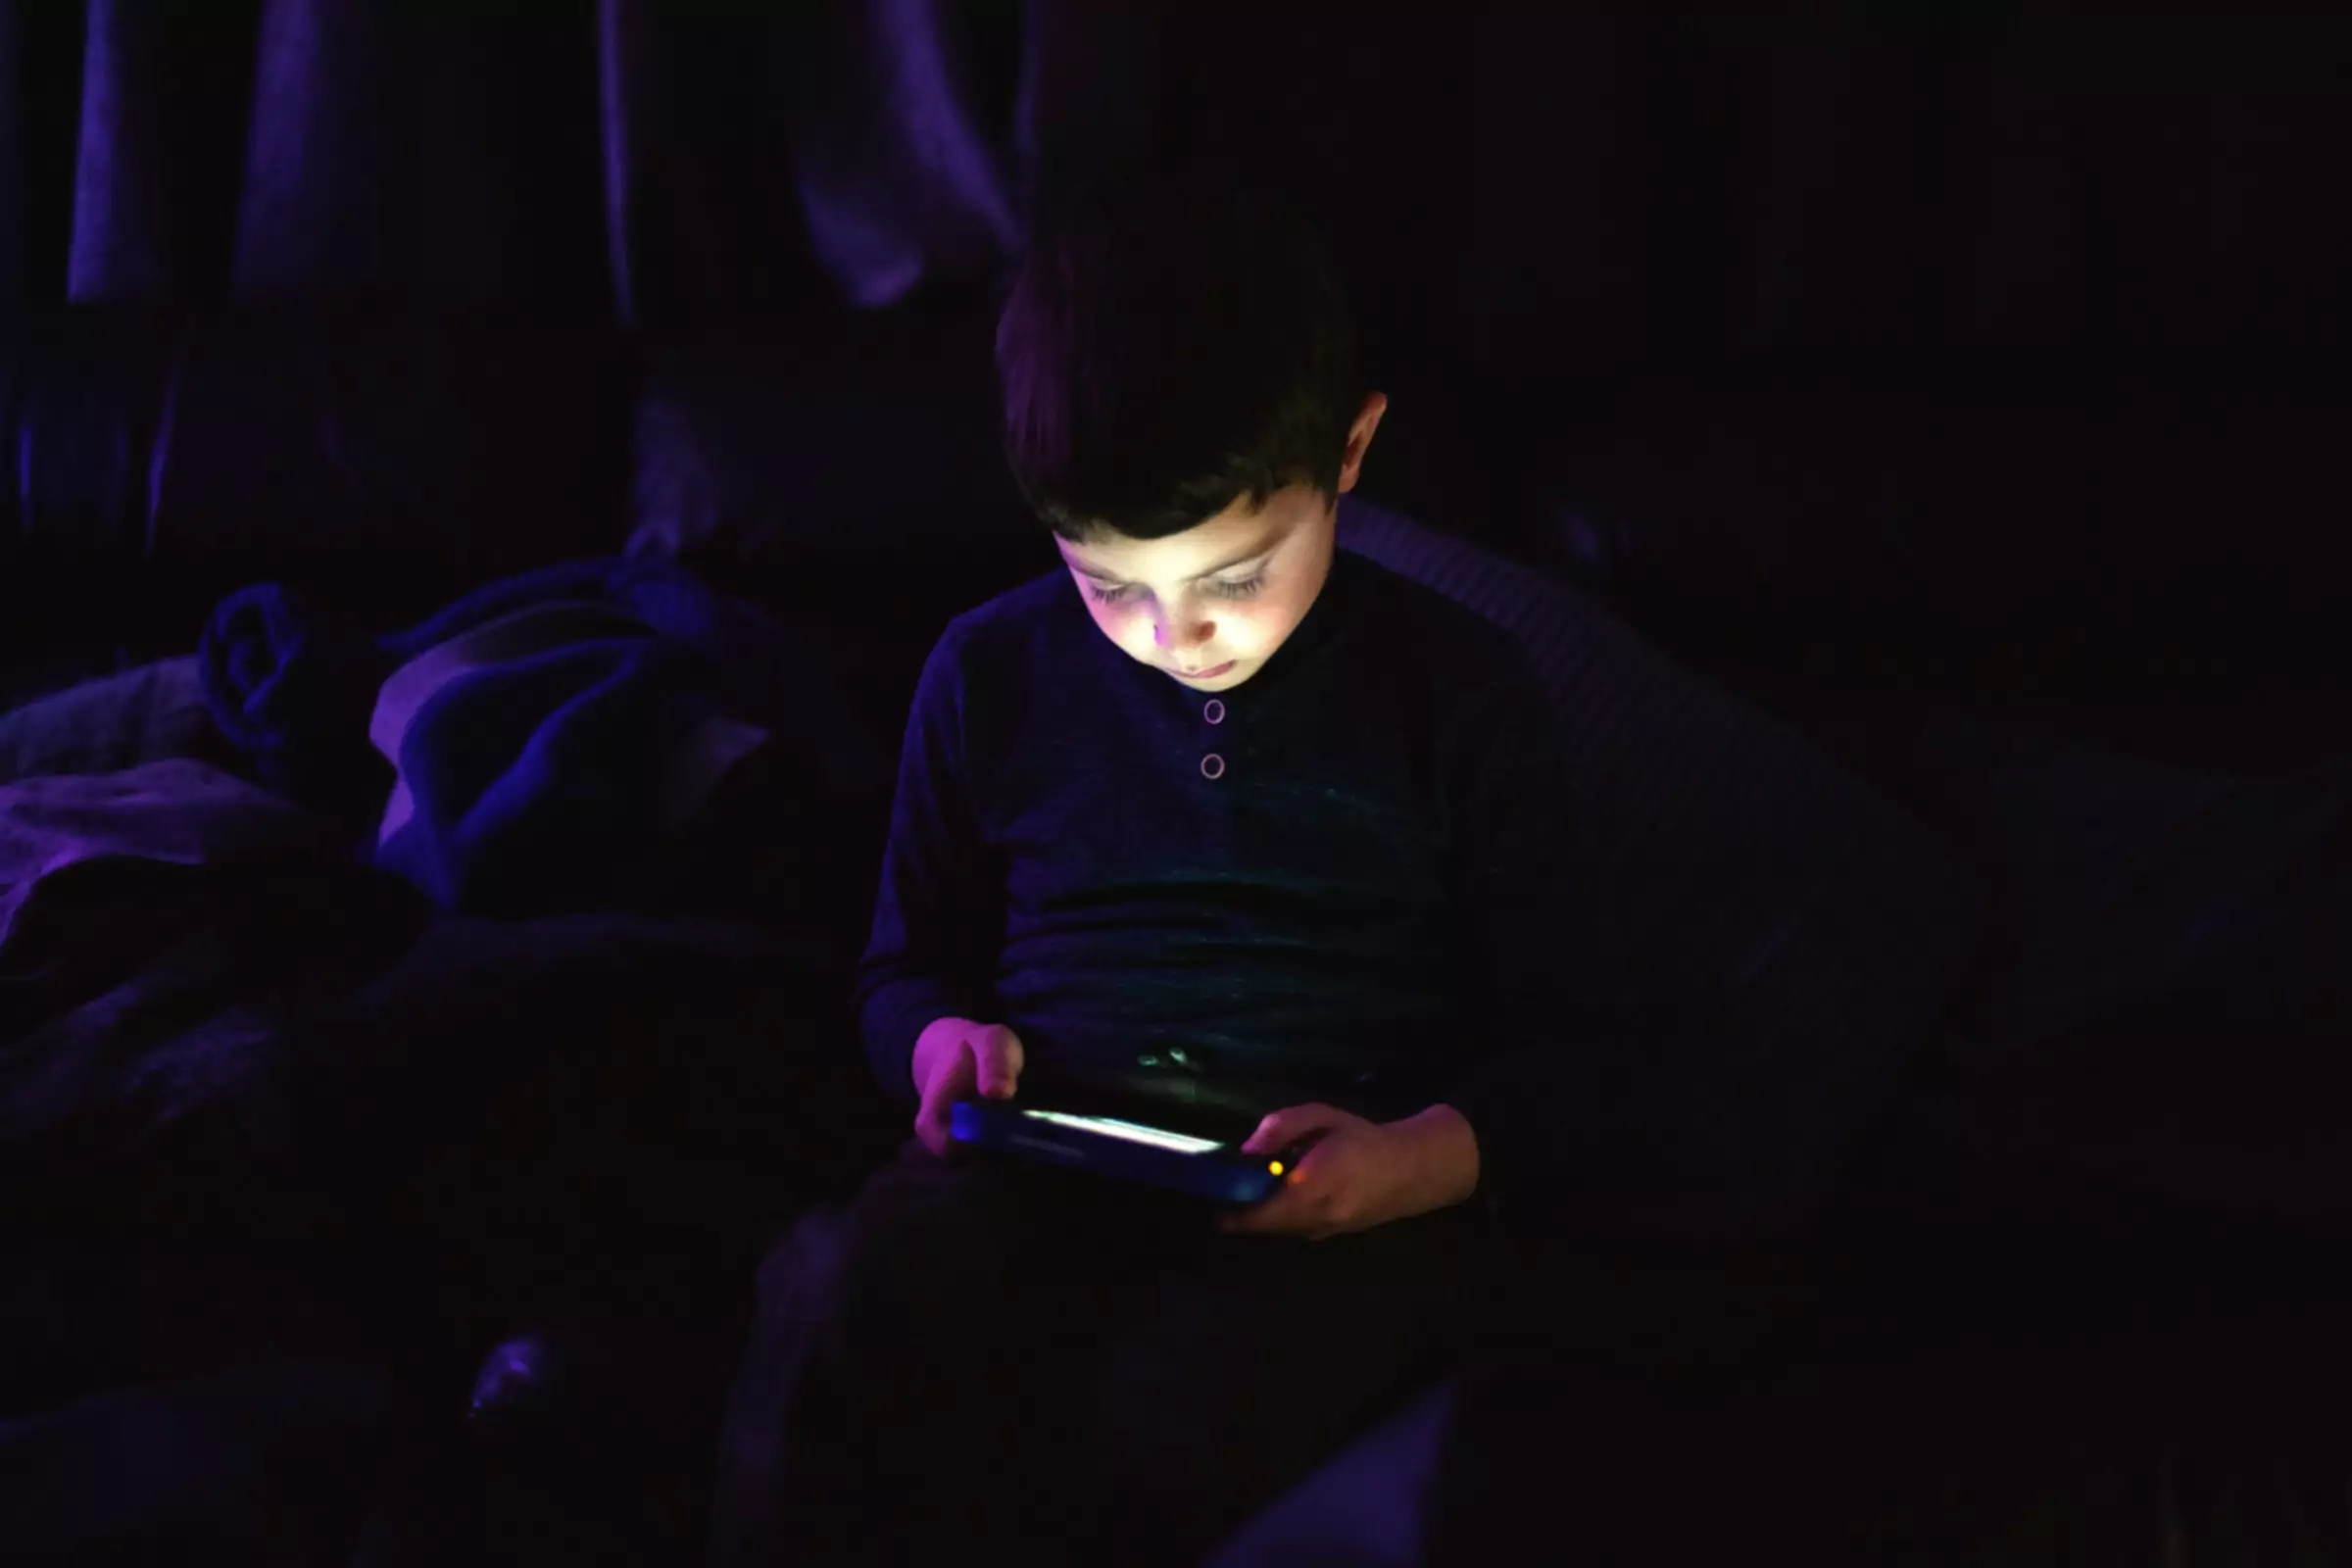 bambino che gioca con il tablet in una stanza buia